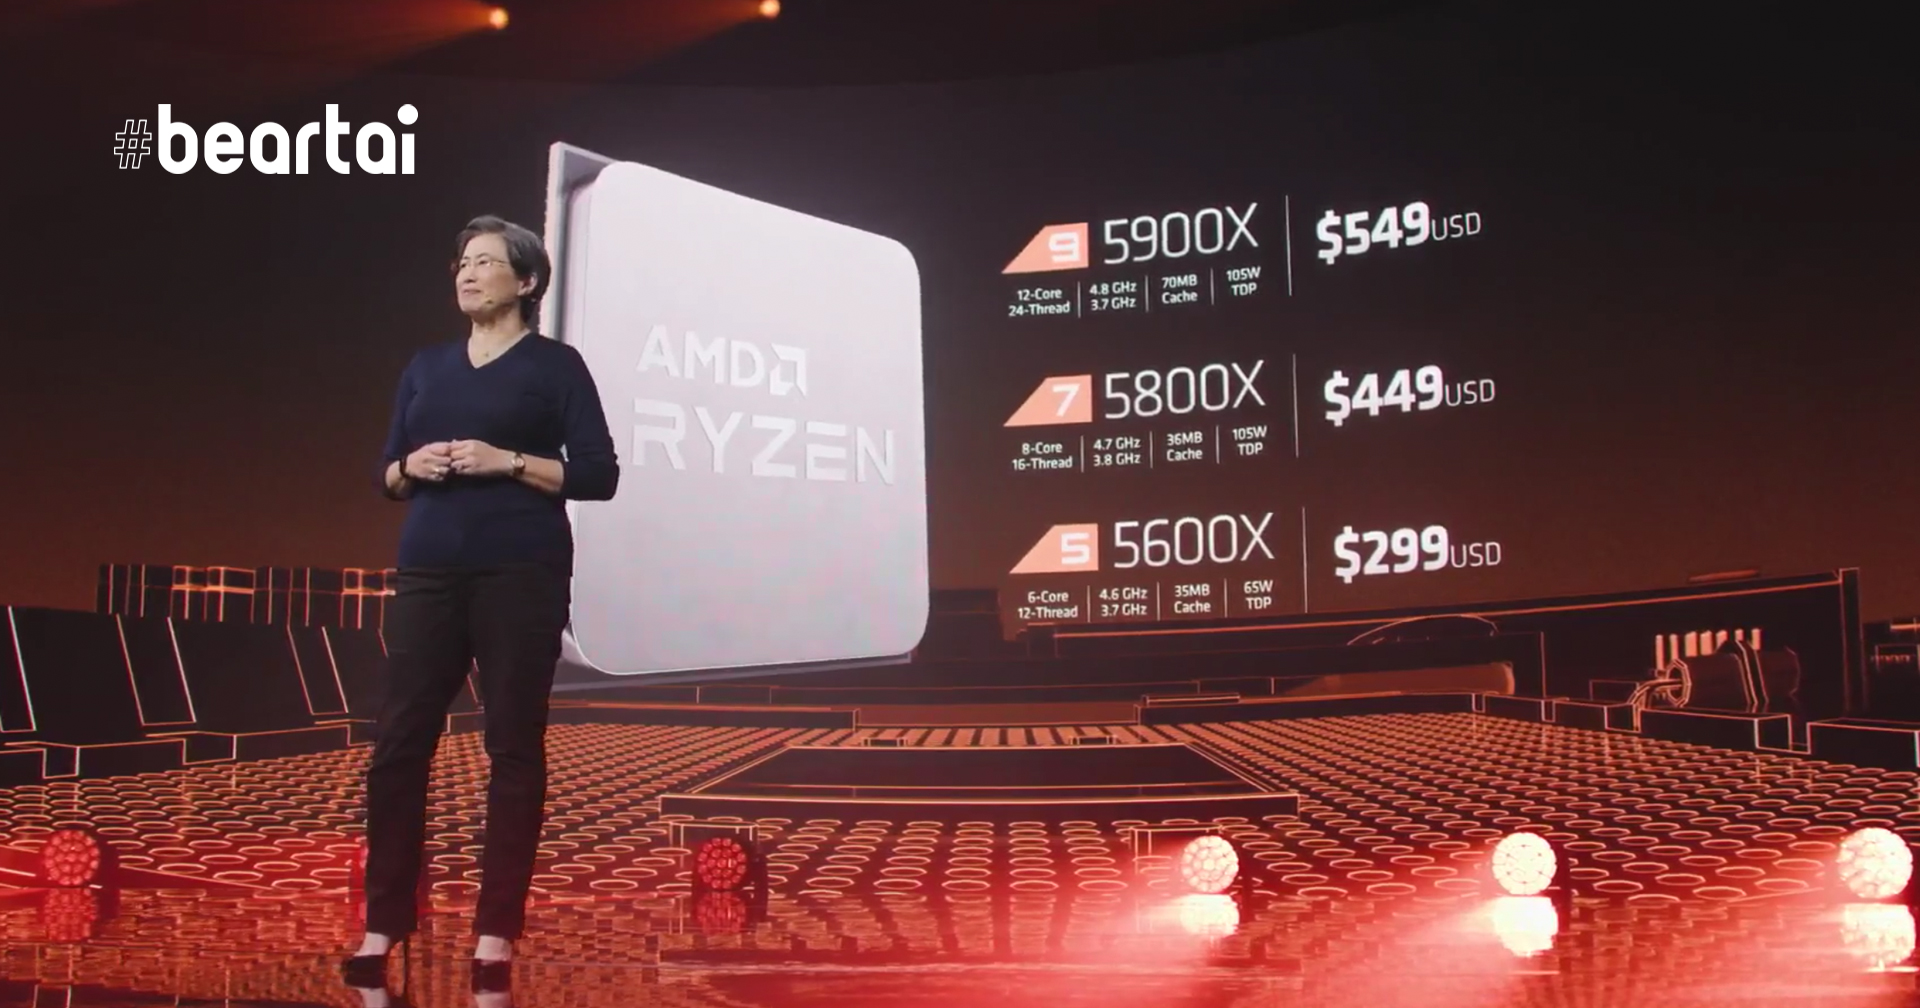 เปิดตัว AMD Ryzen 5000 Desktop ชิปสถาปัตยกรรม Zen 3 ตัวแรก ที่เกิดมาเพื่อเล่นเกม และทำงาน